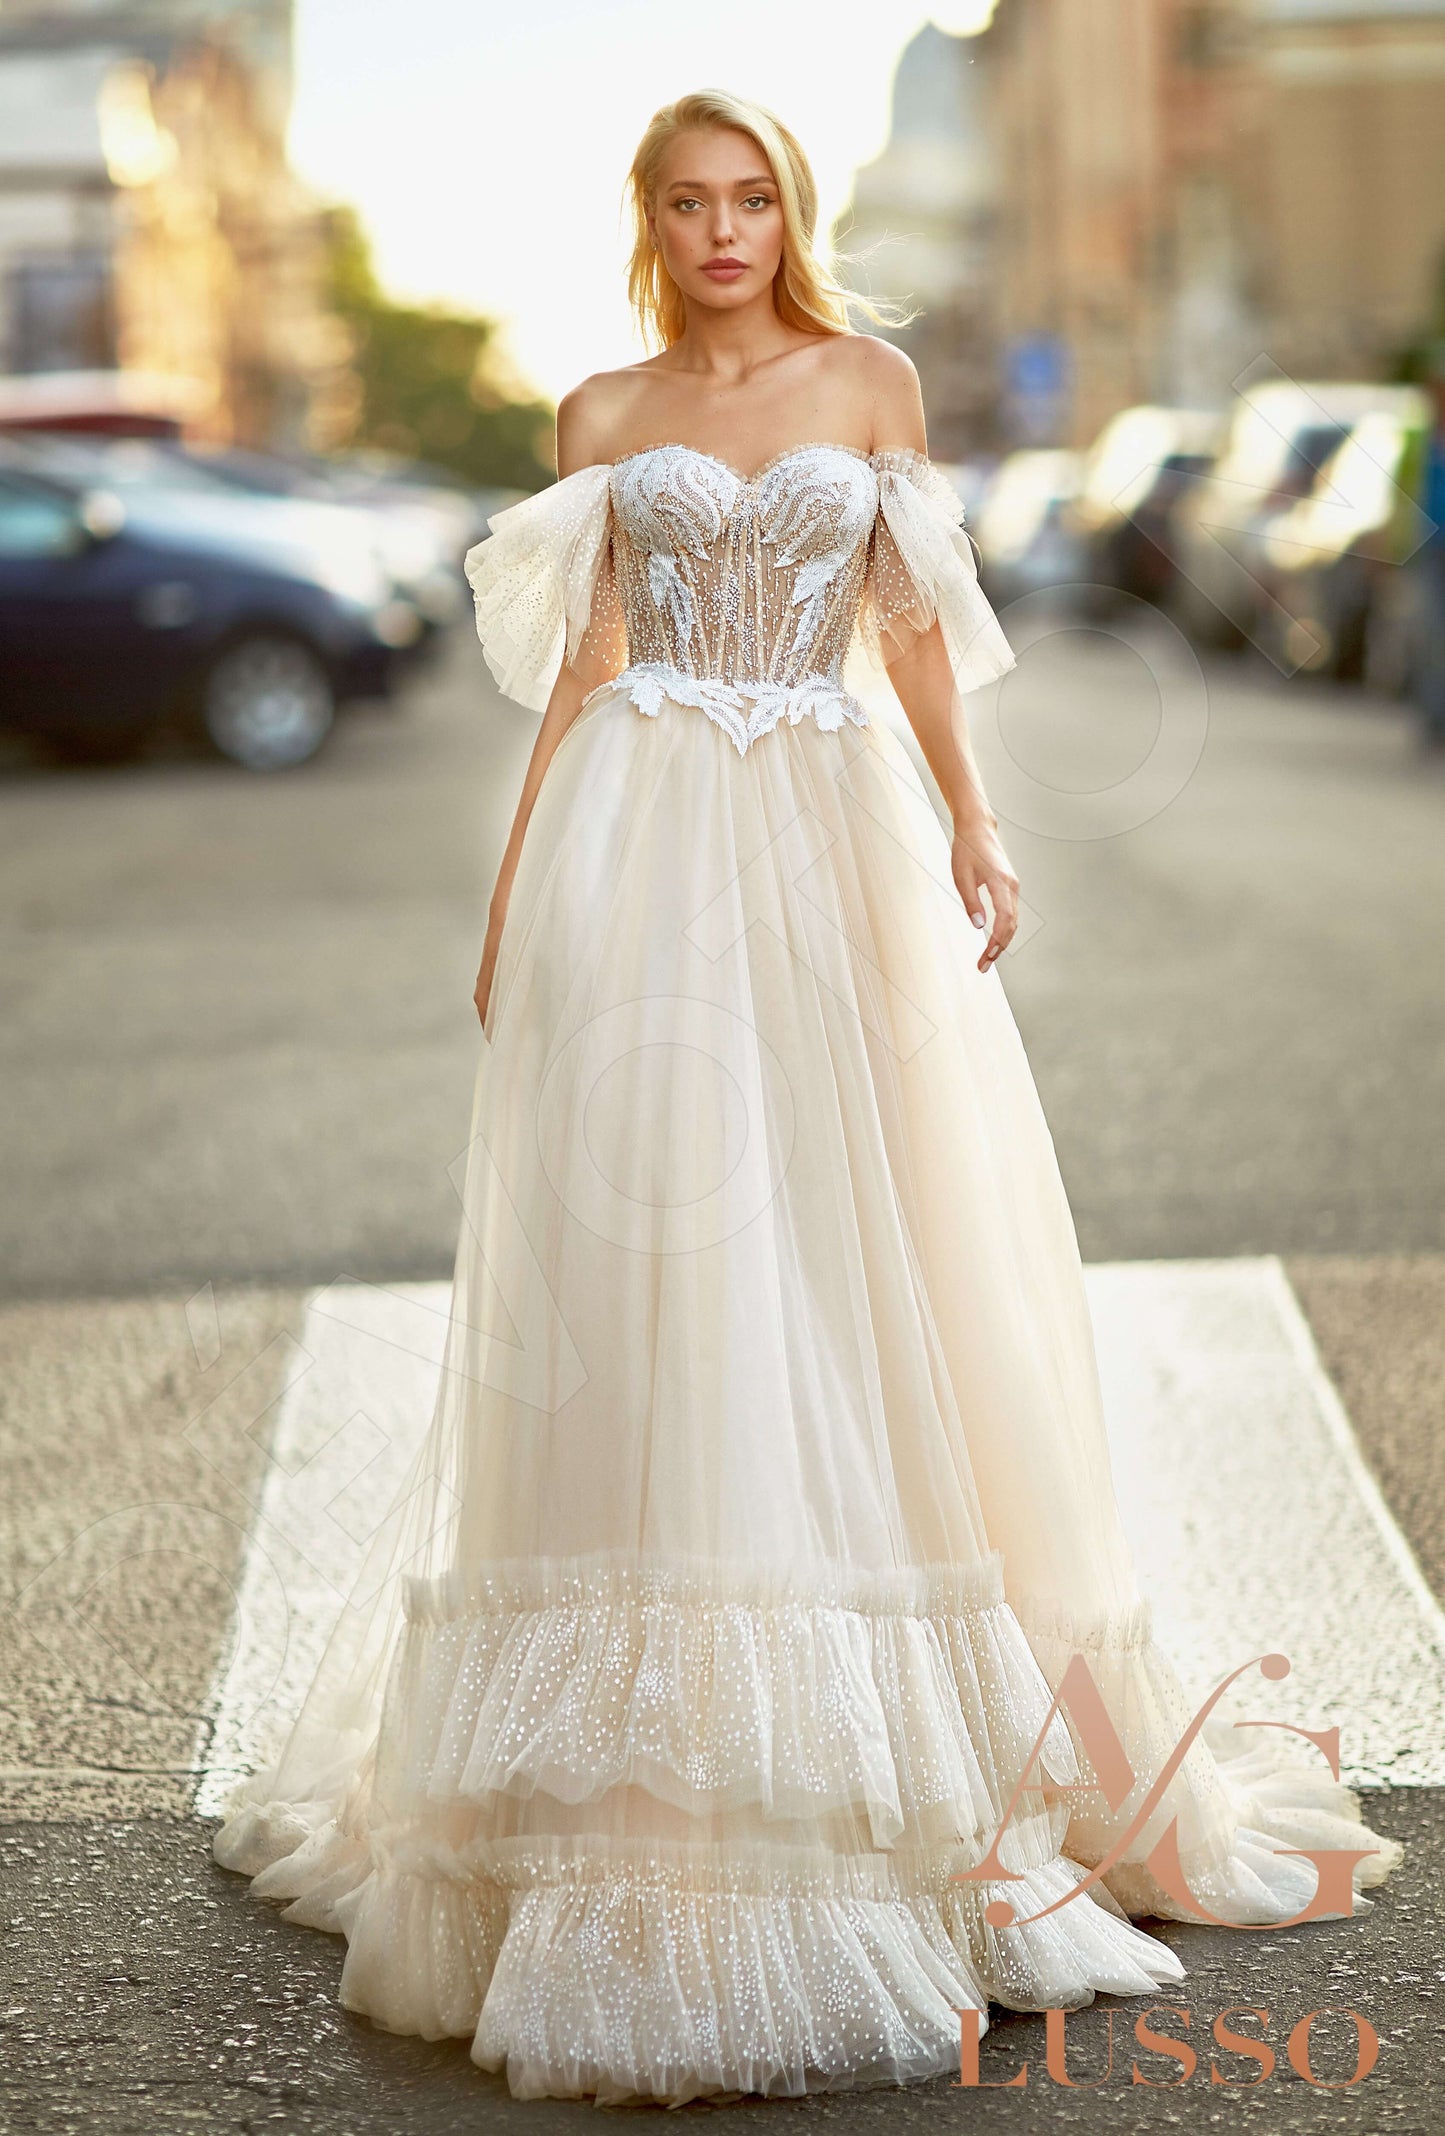 Dariana Open back A-line Short/ Cap sleeve Wedding Dress Front